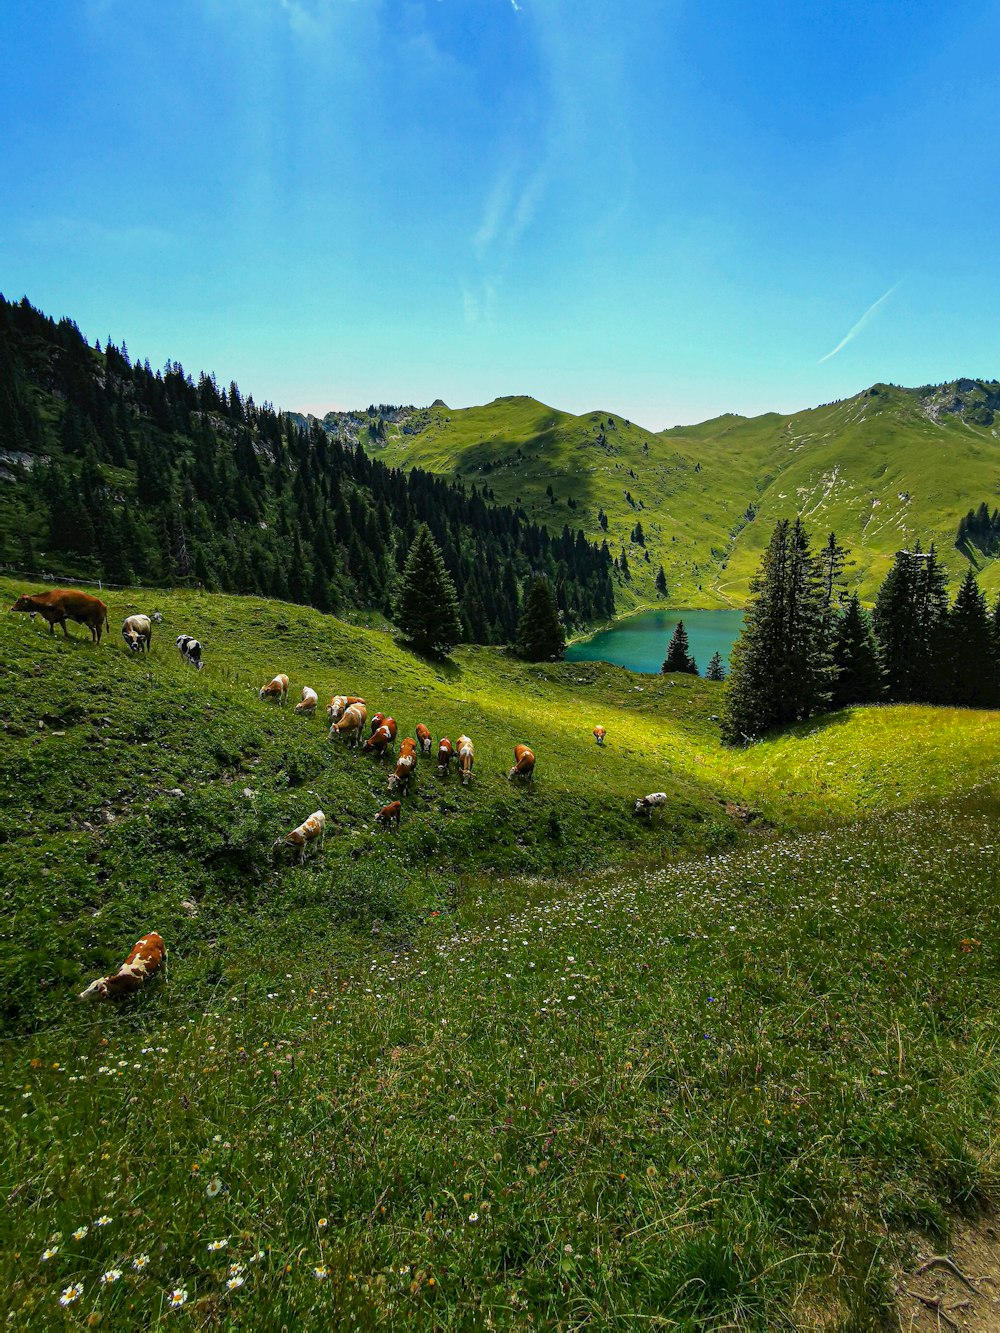 Un groupe d’animaux paissant sur une colline herbeuse